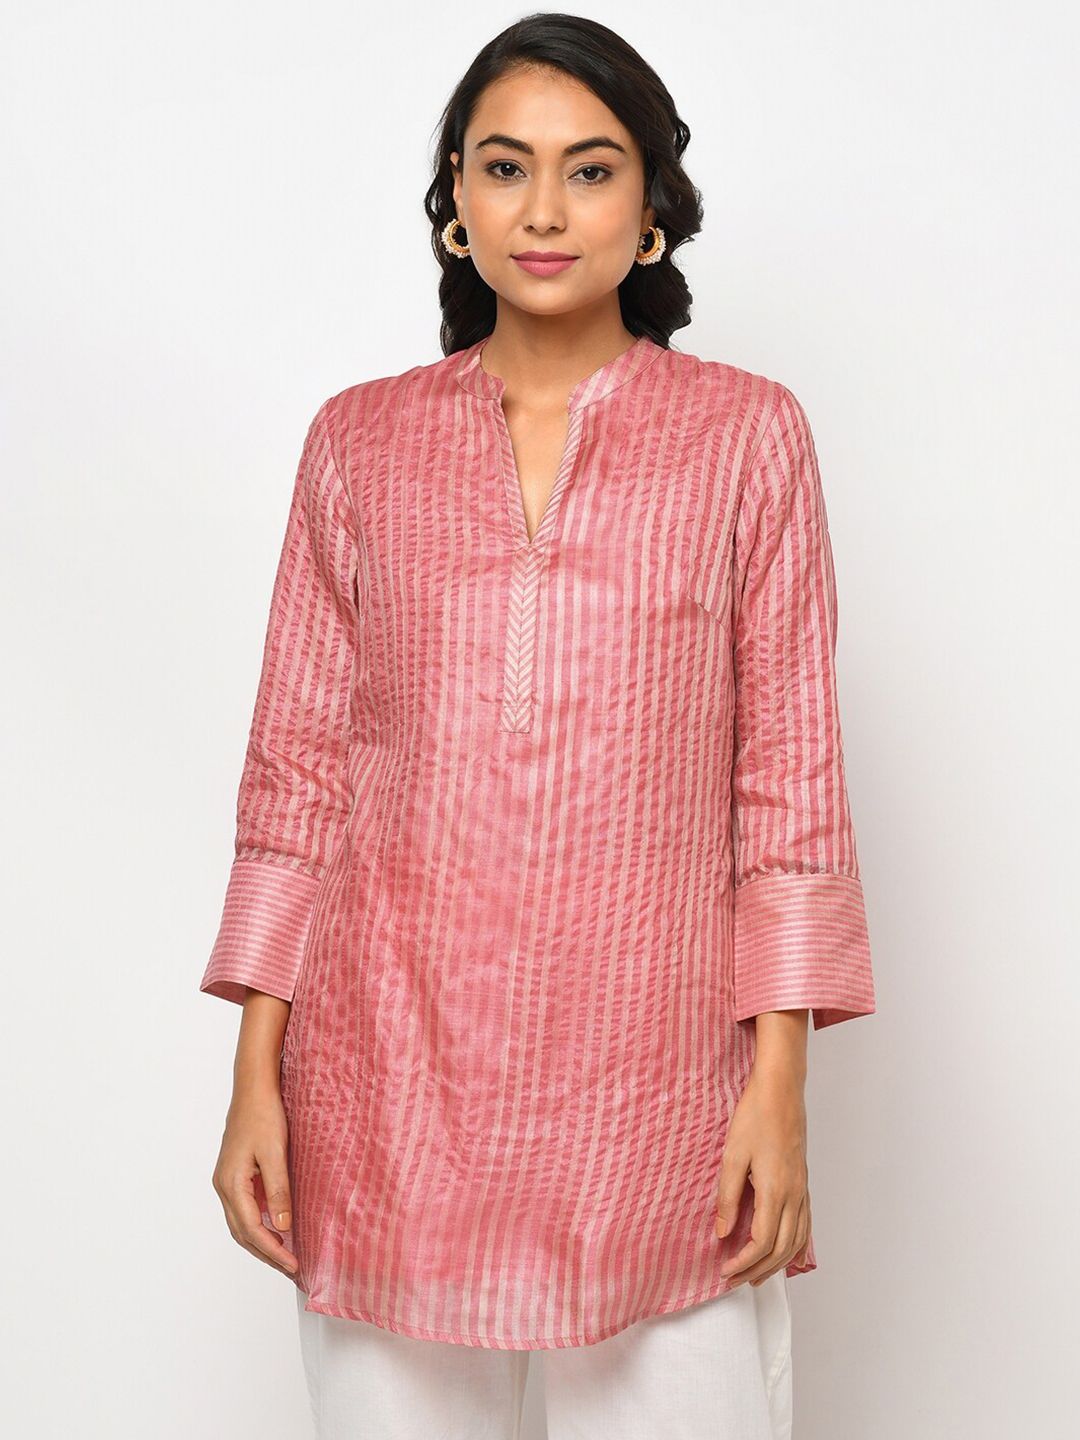 Fabindia Pink & Beige Mandarin Collar Striped Tunic Price in India